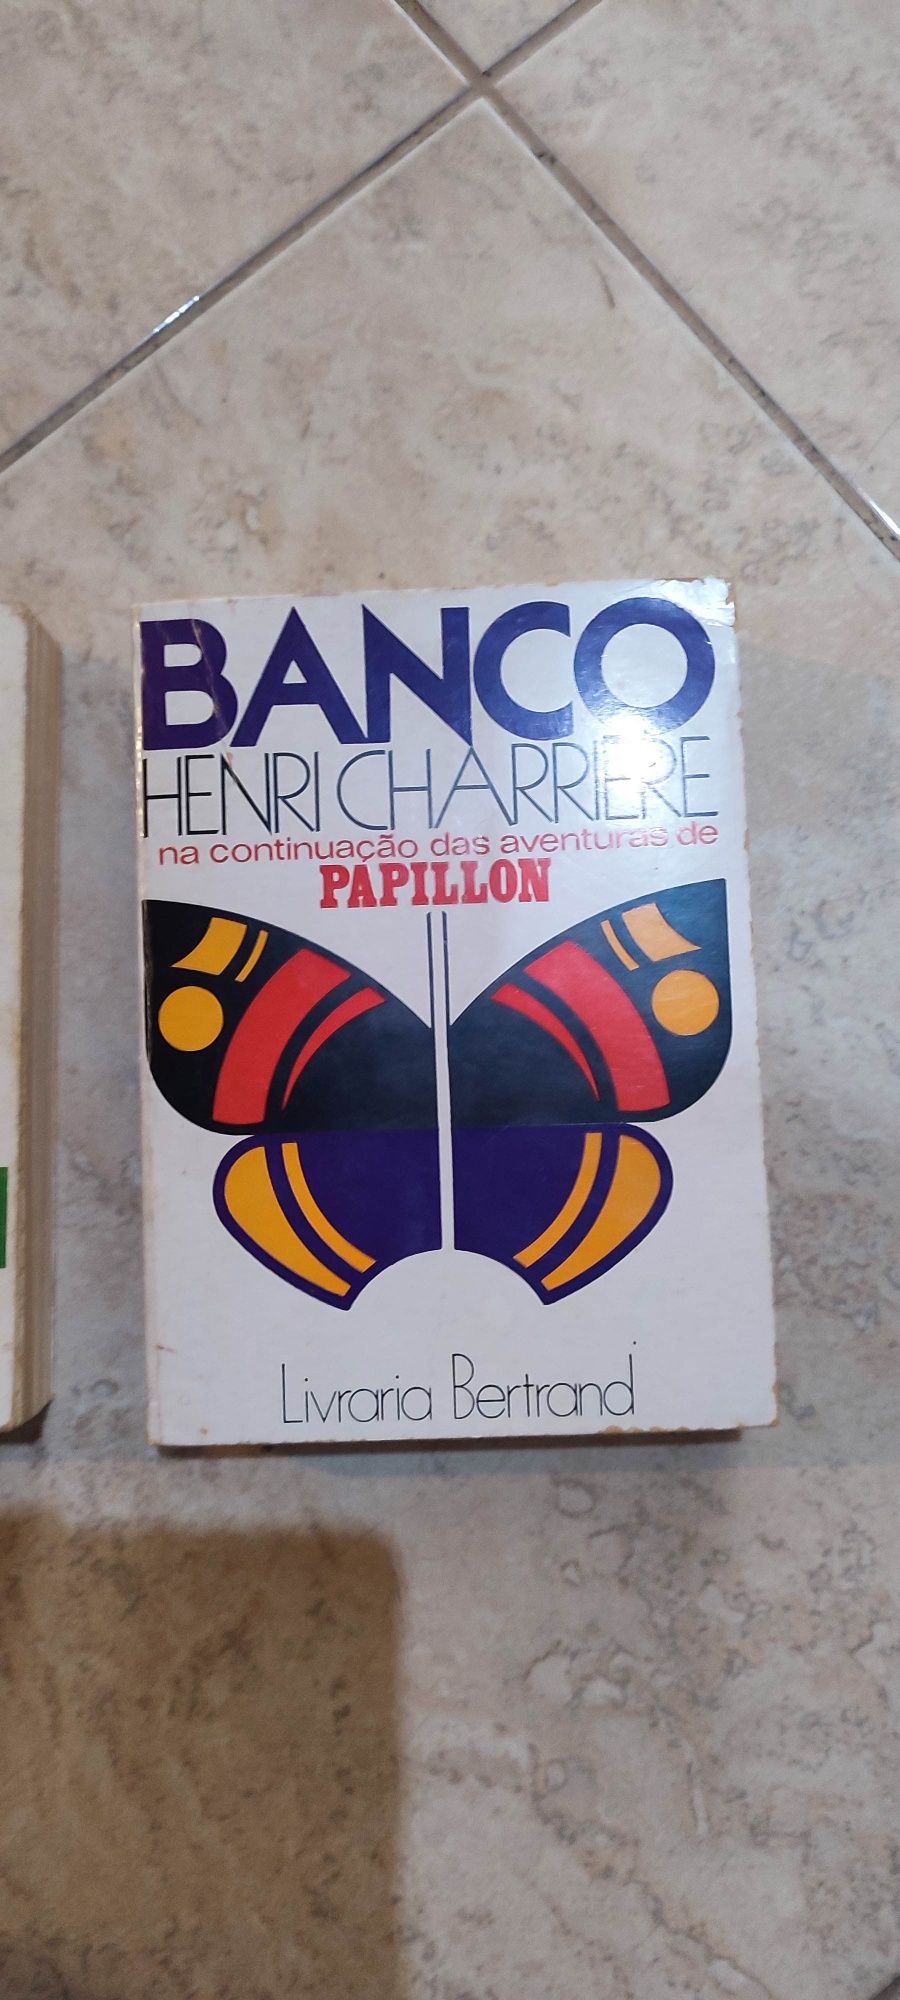 2 Livros de Henri Charriére Papillon